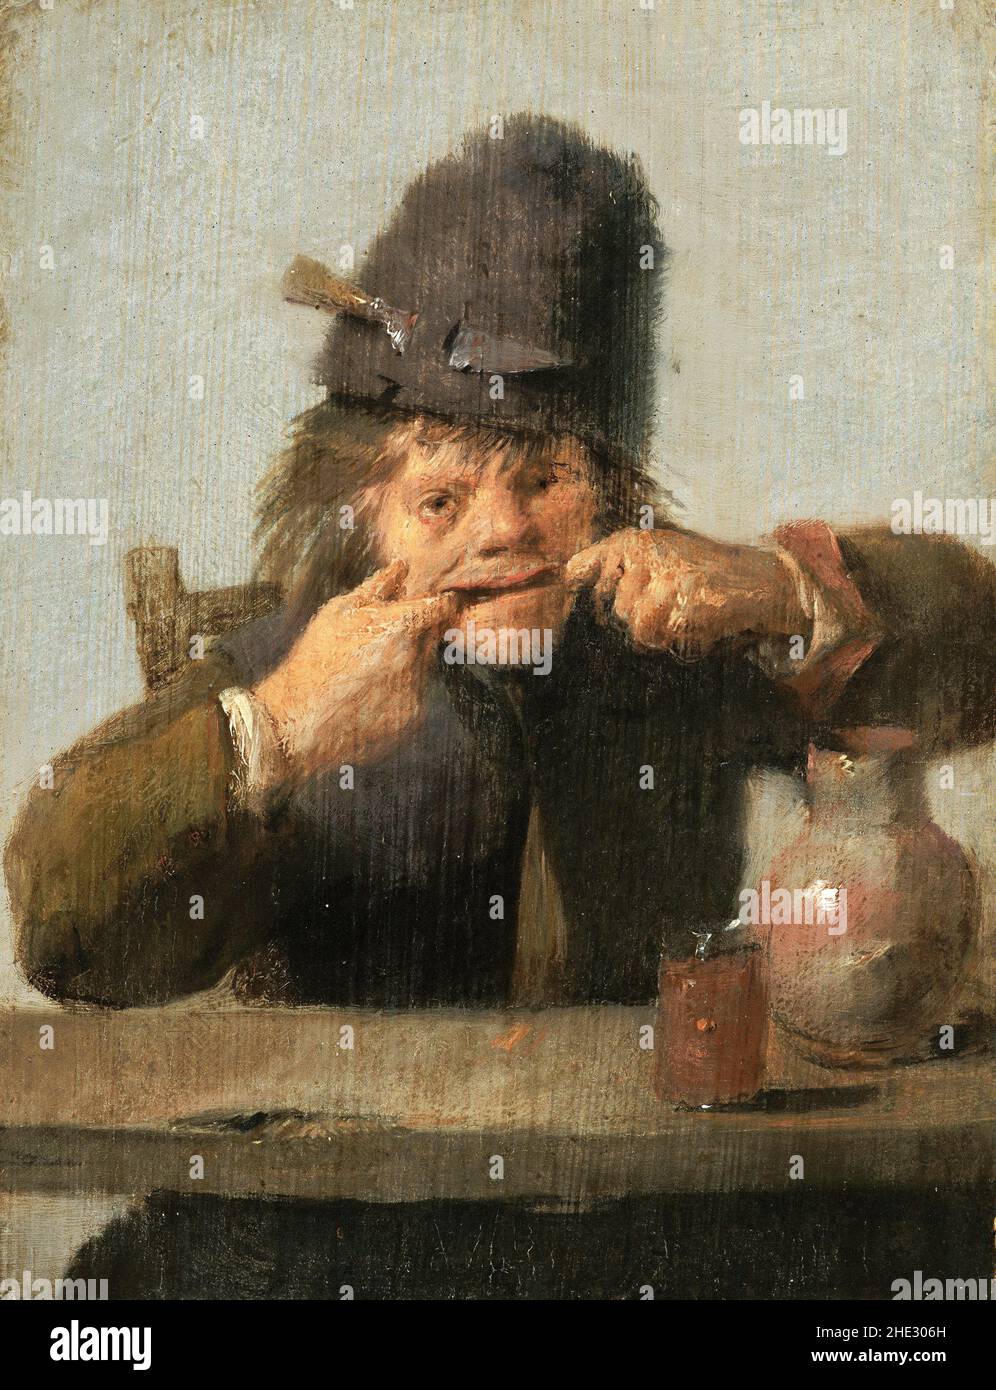 Jugend macht ein Gesicht von der flämischen Barockkünstler, Adriaen Brouwer (c. 1605-1638), Öl auf Platte, c. 1632-35 Stockfoto